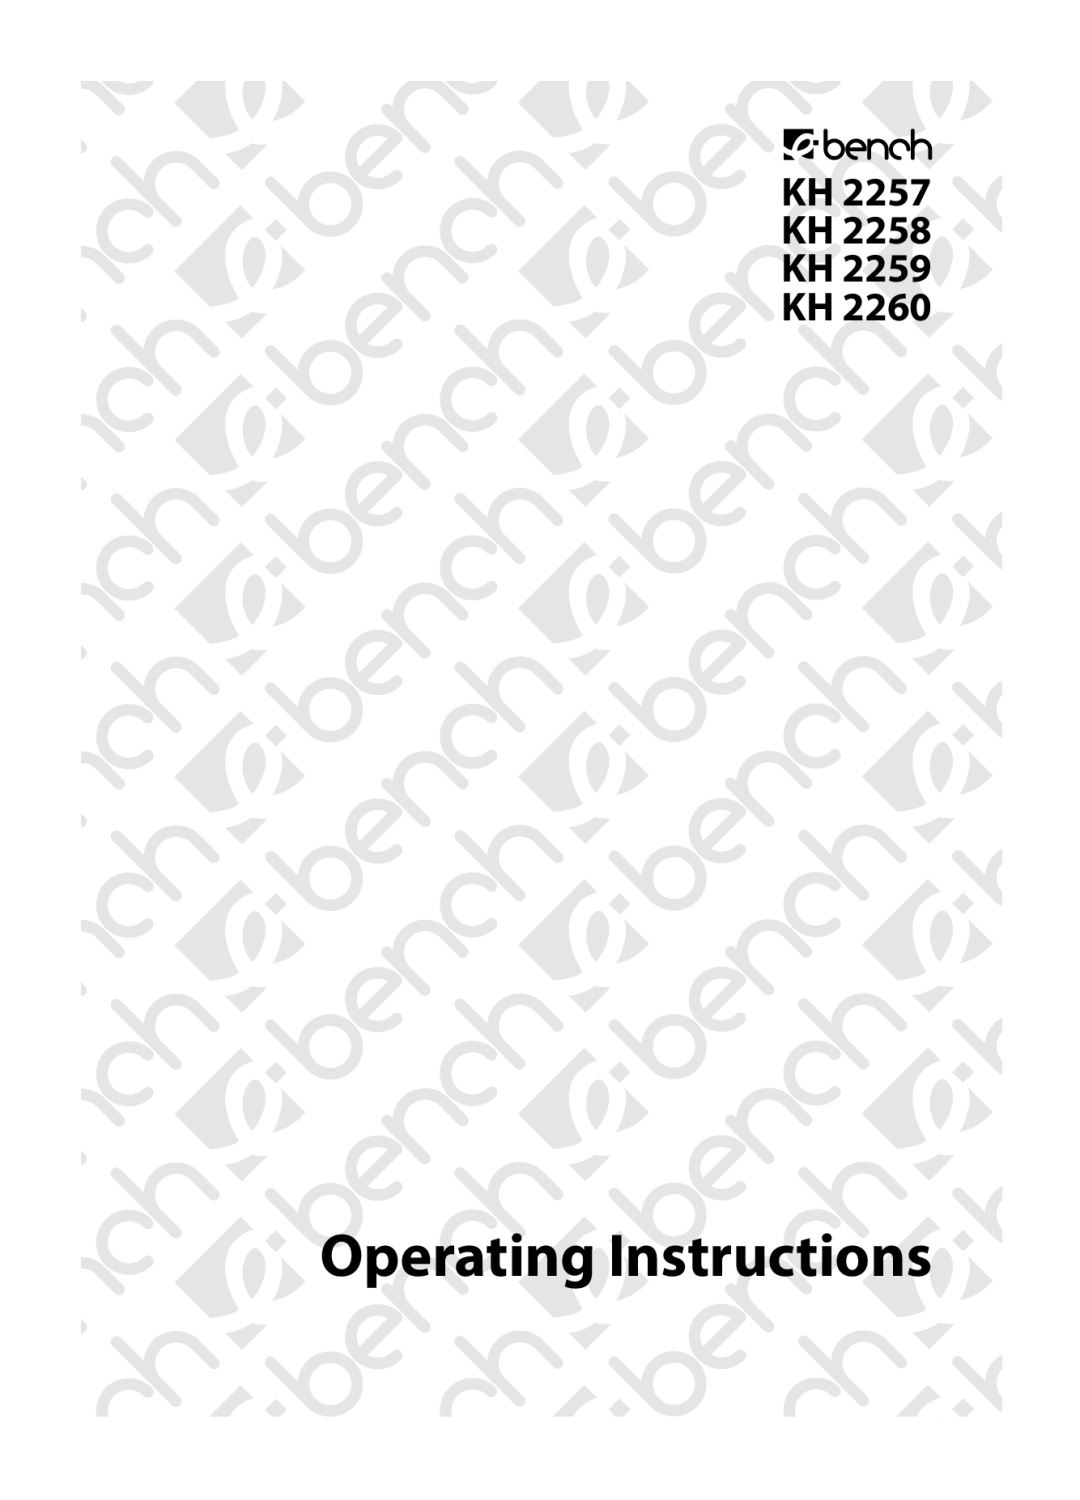 Kompernass KH 2260, KH 2258, KH 2259 operating instructions Operating Instructions 